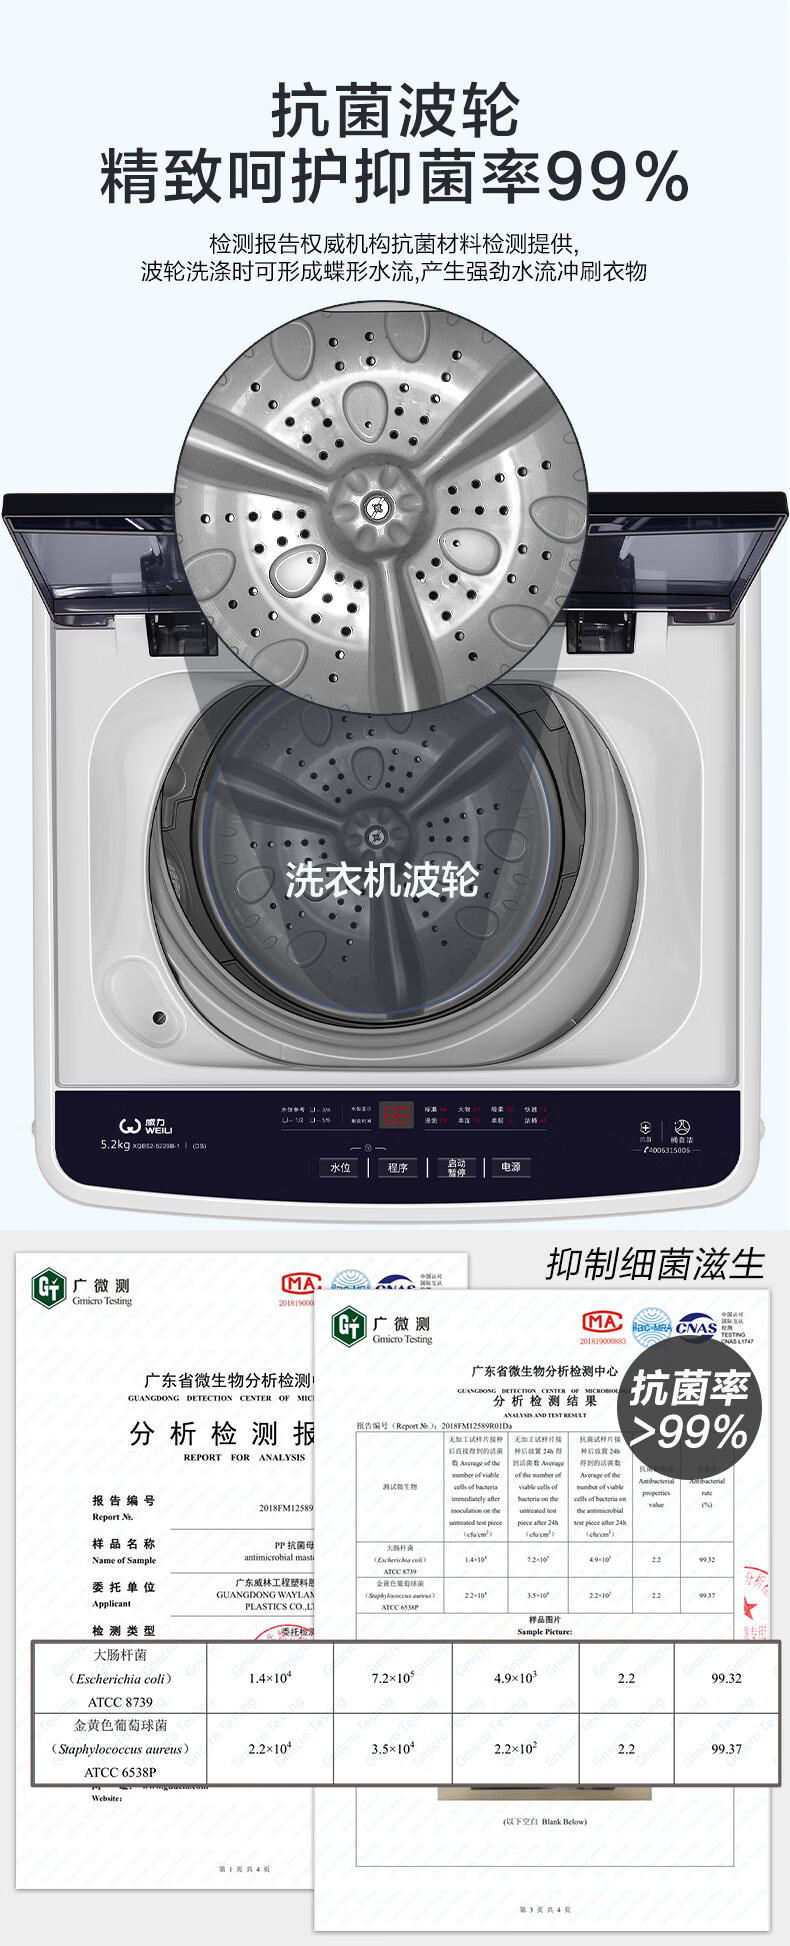 威力XQB52-5226B-1洗衣机图片